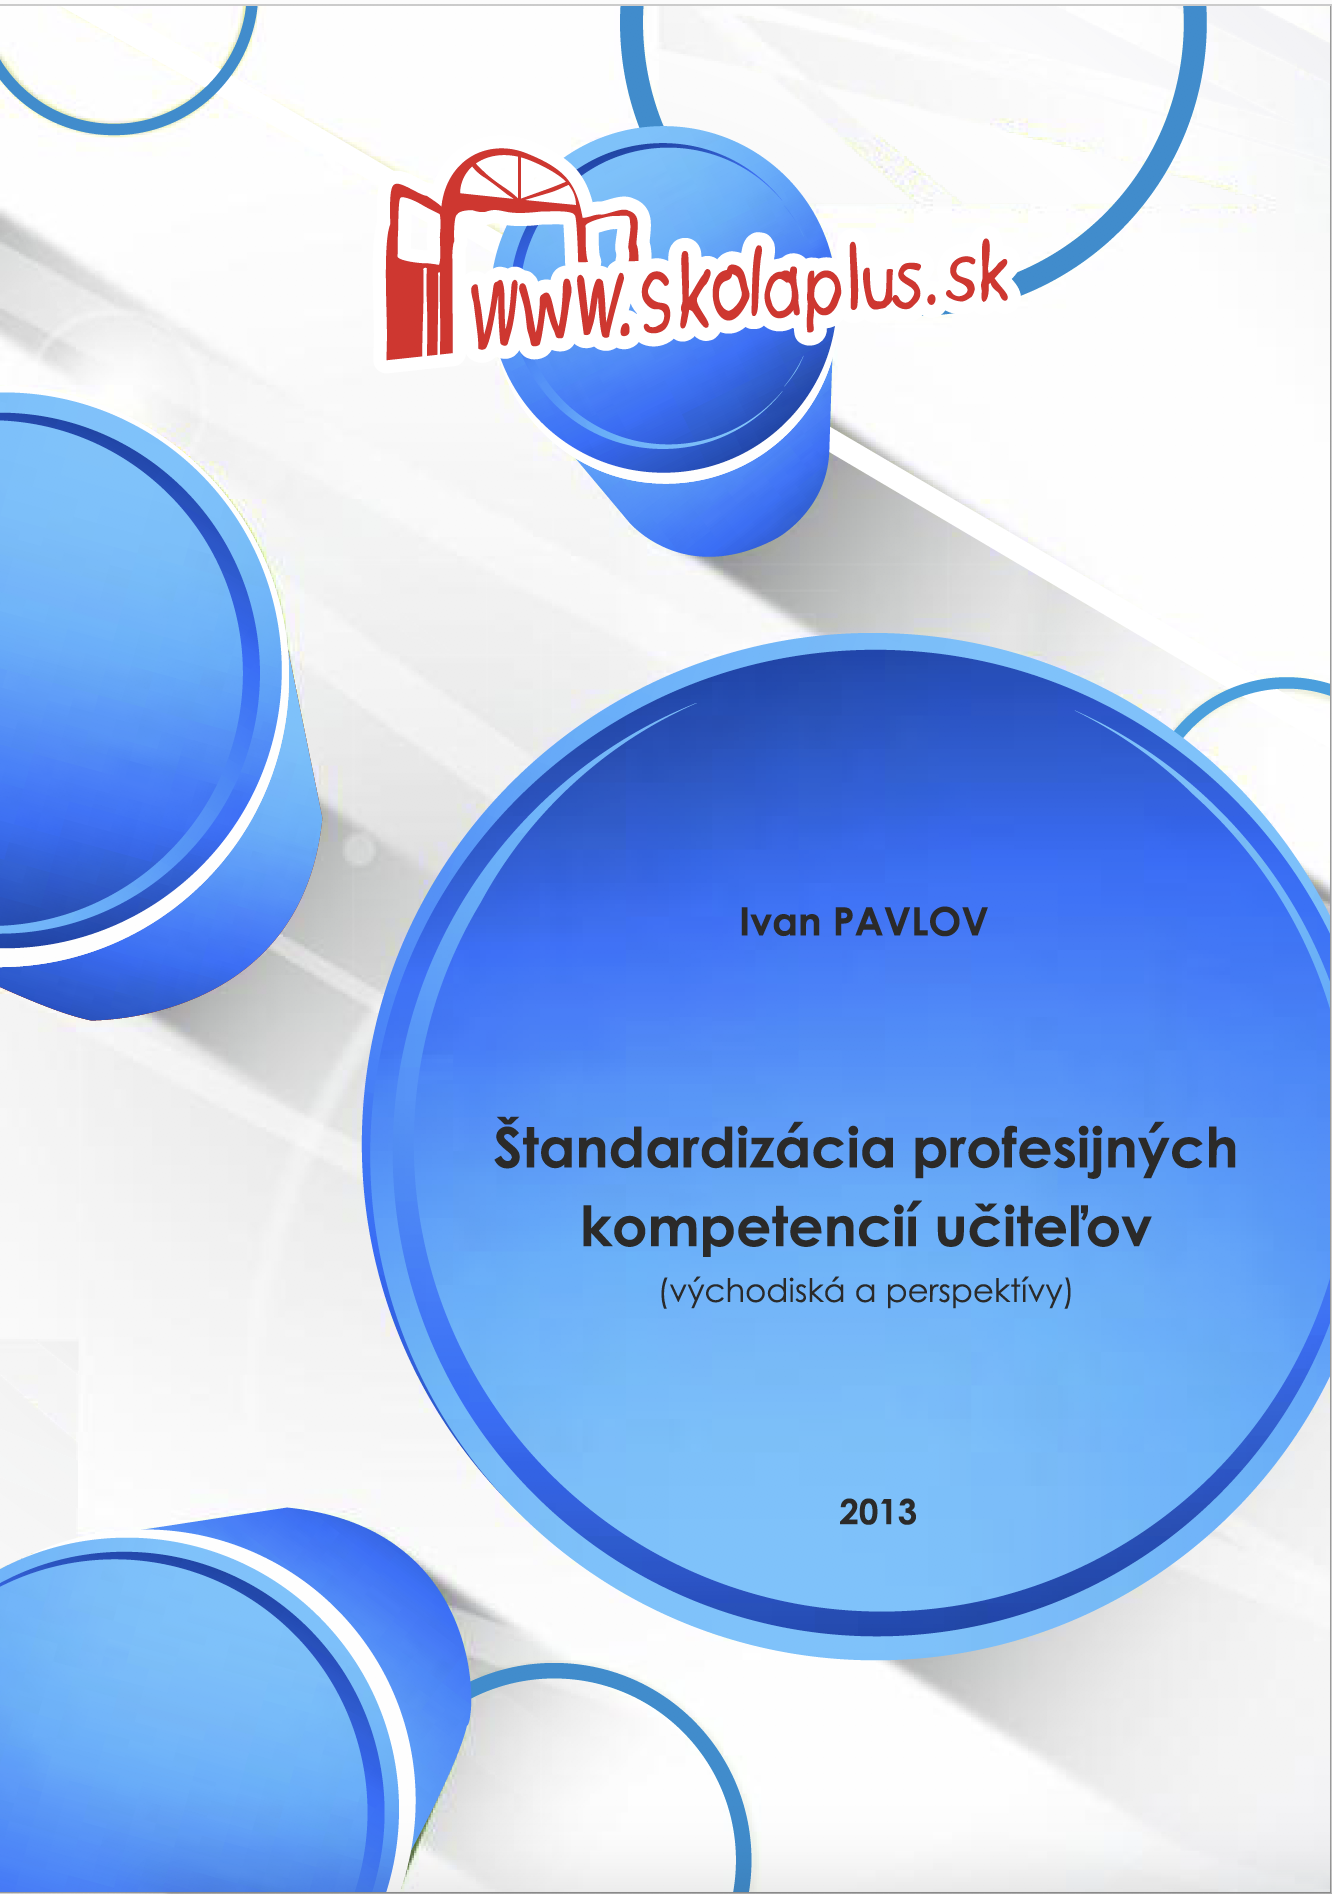 I. Pavlov - Štandardizácia profesijných kompetencií učiteľov (východiská a perspektívy)